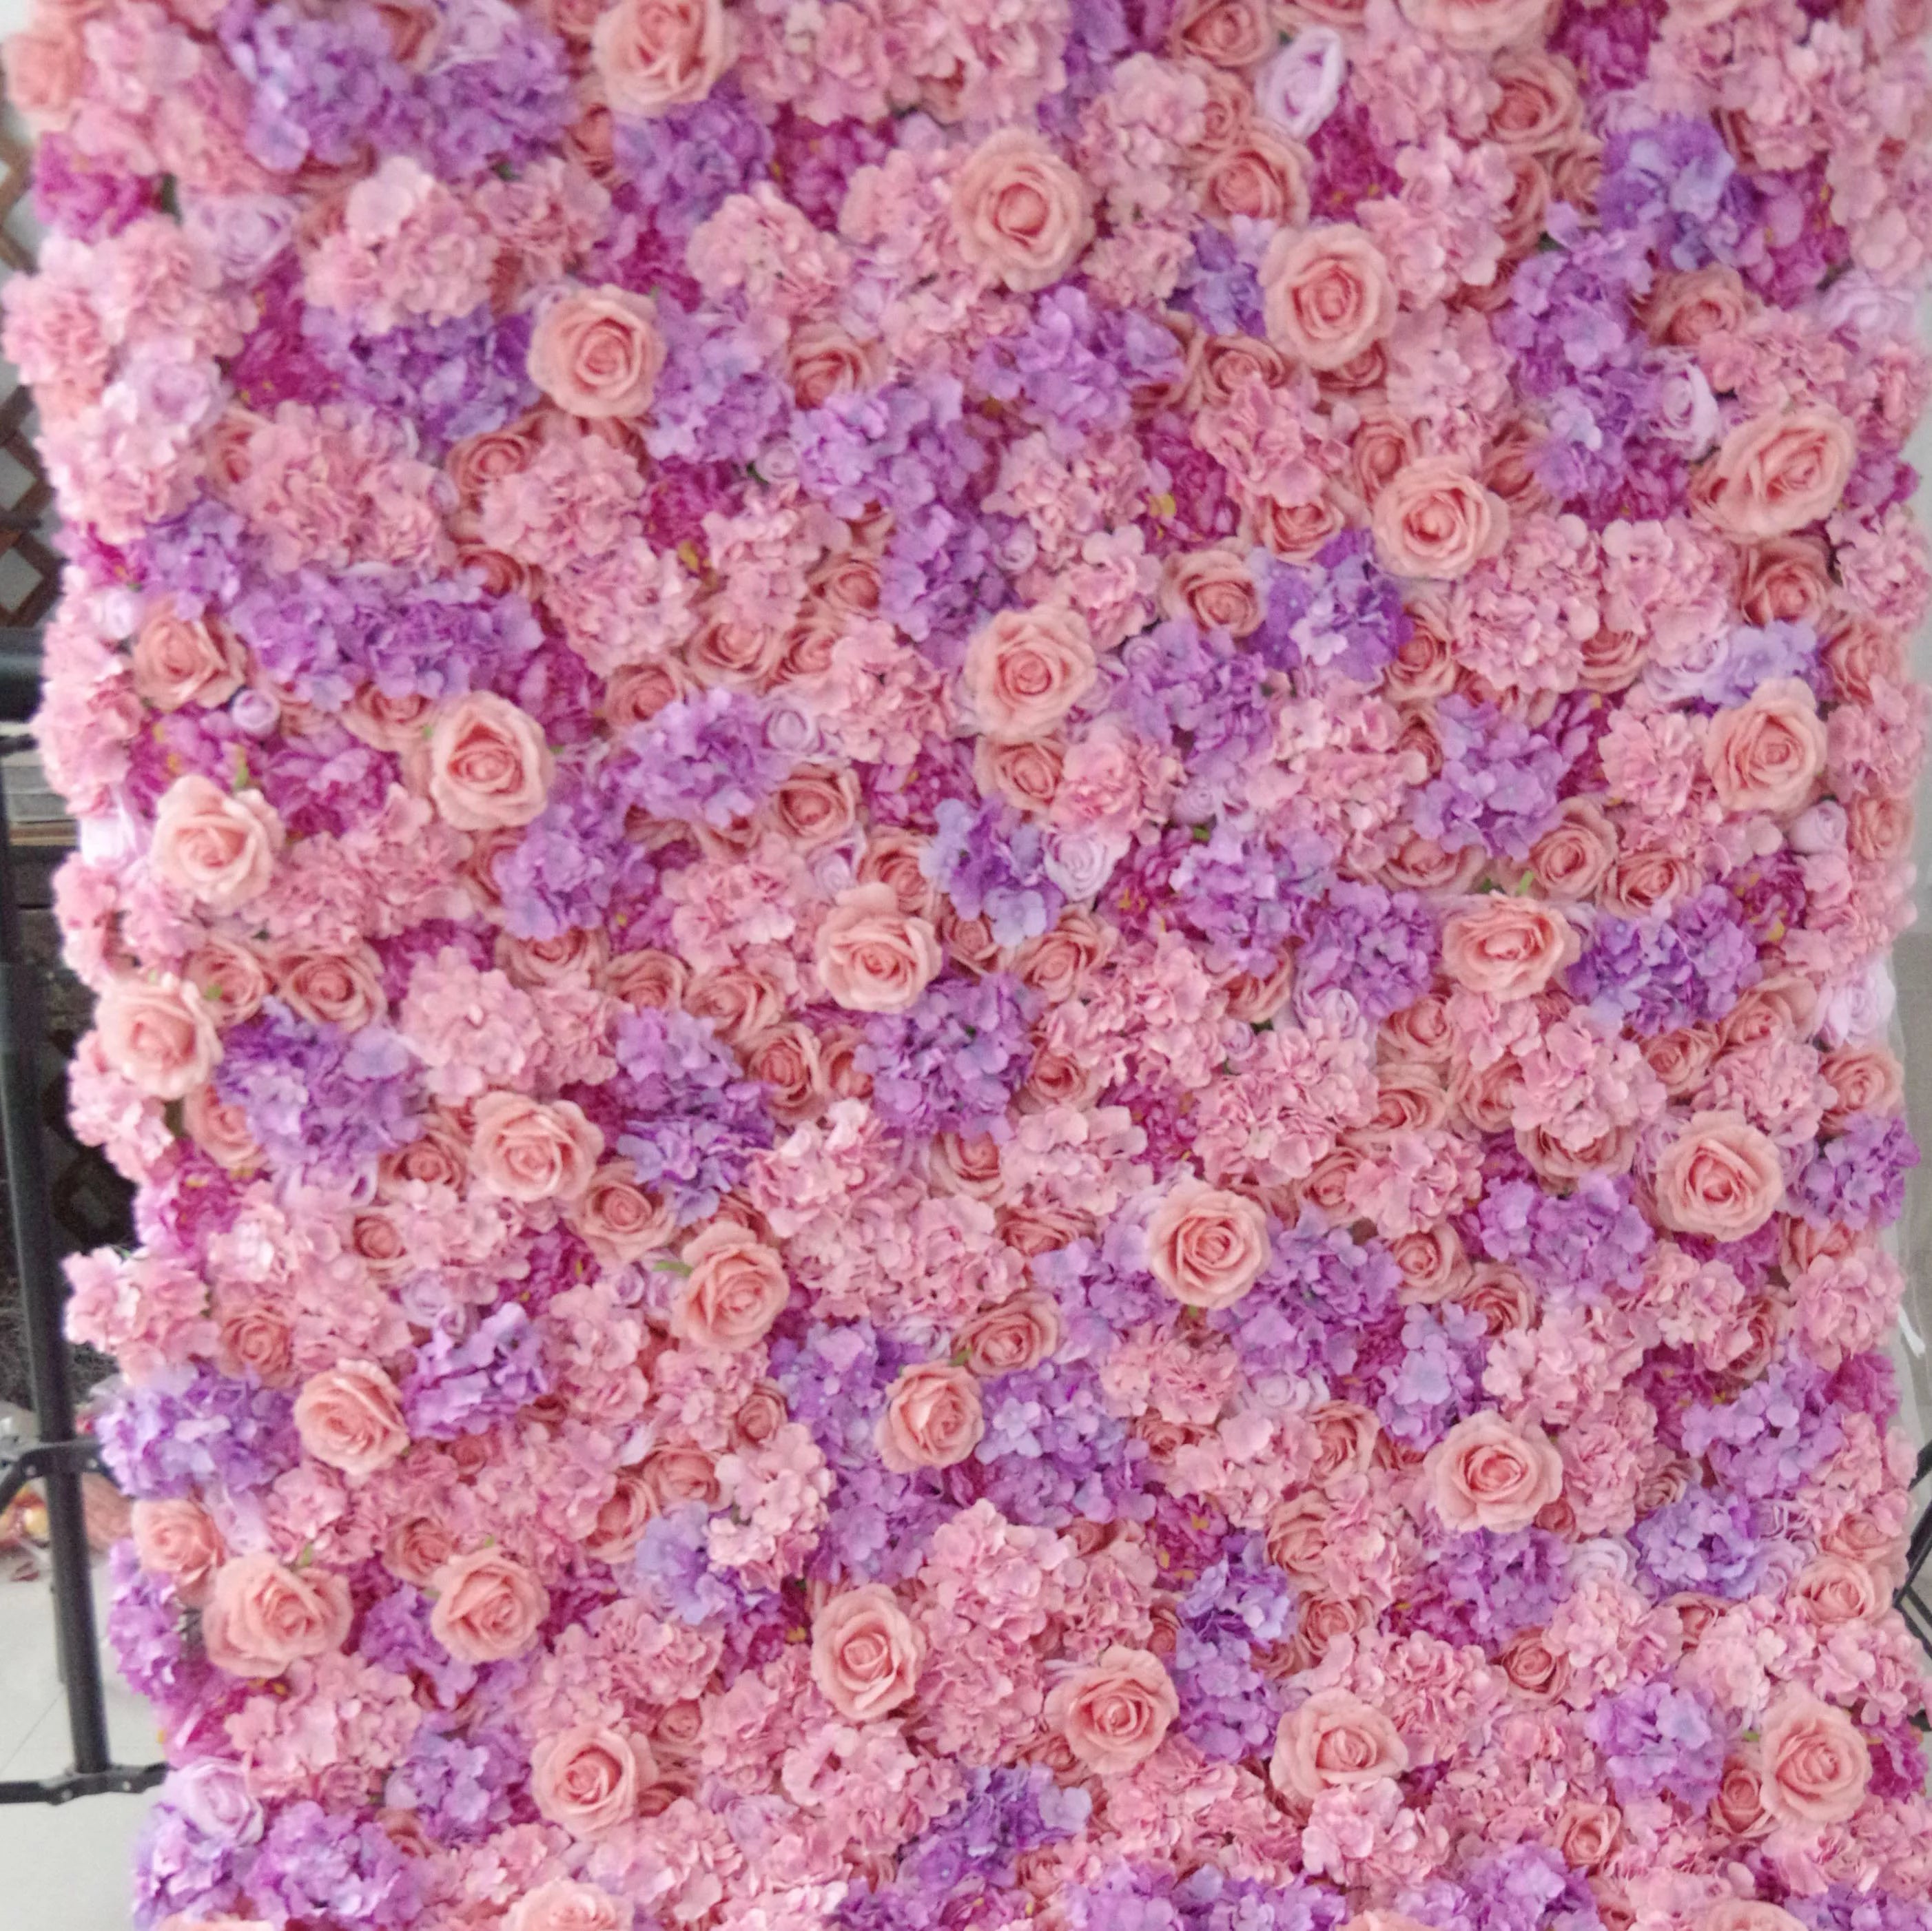 Valar Flowers Roll Up Tissu Rose artificielle et mur de fleurs violettes chaudes Toile de fond de mariage, Décor de fête florale, Photographie d'événement-VF-055 